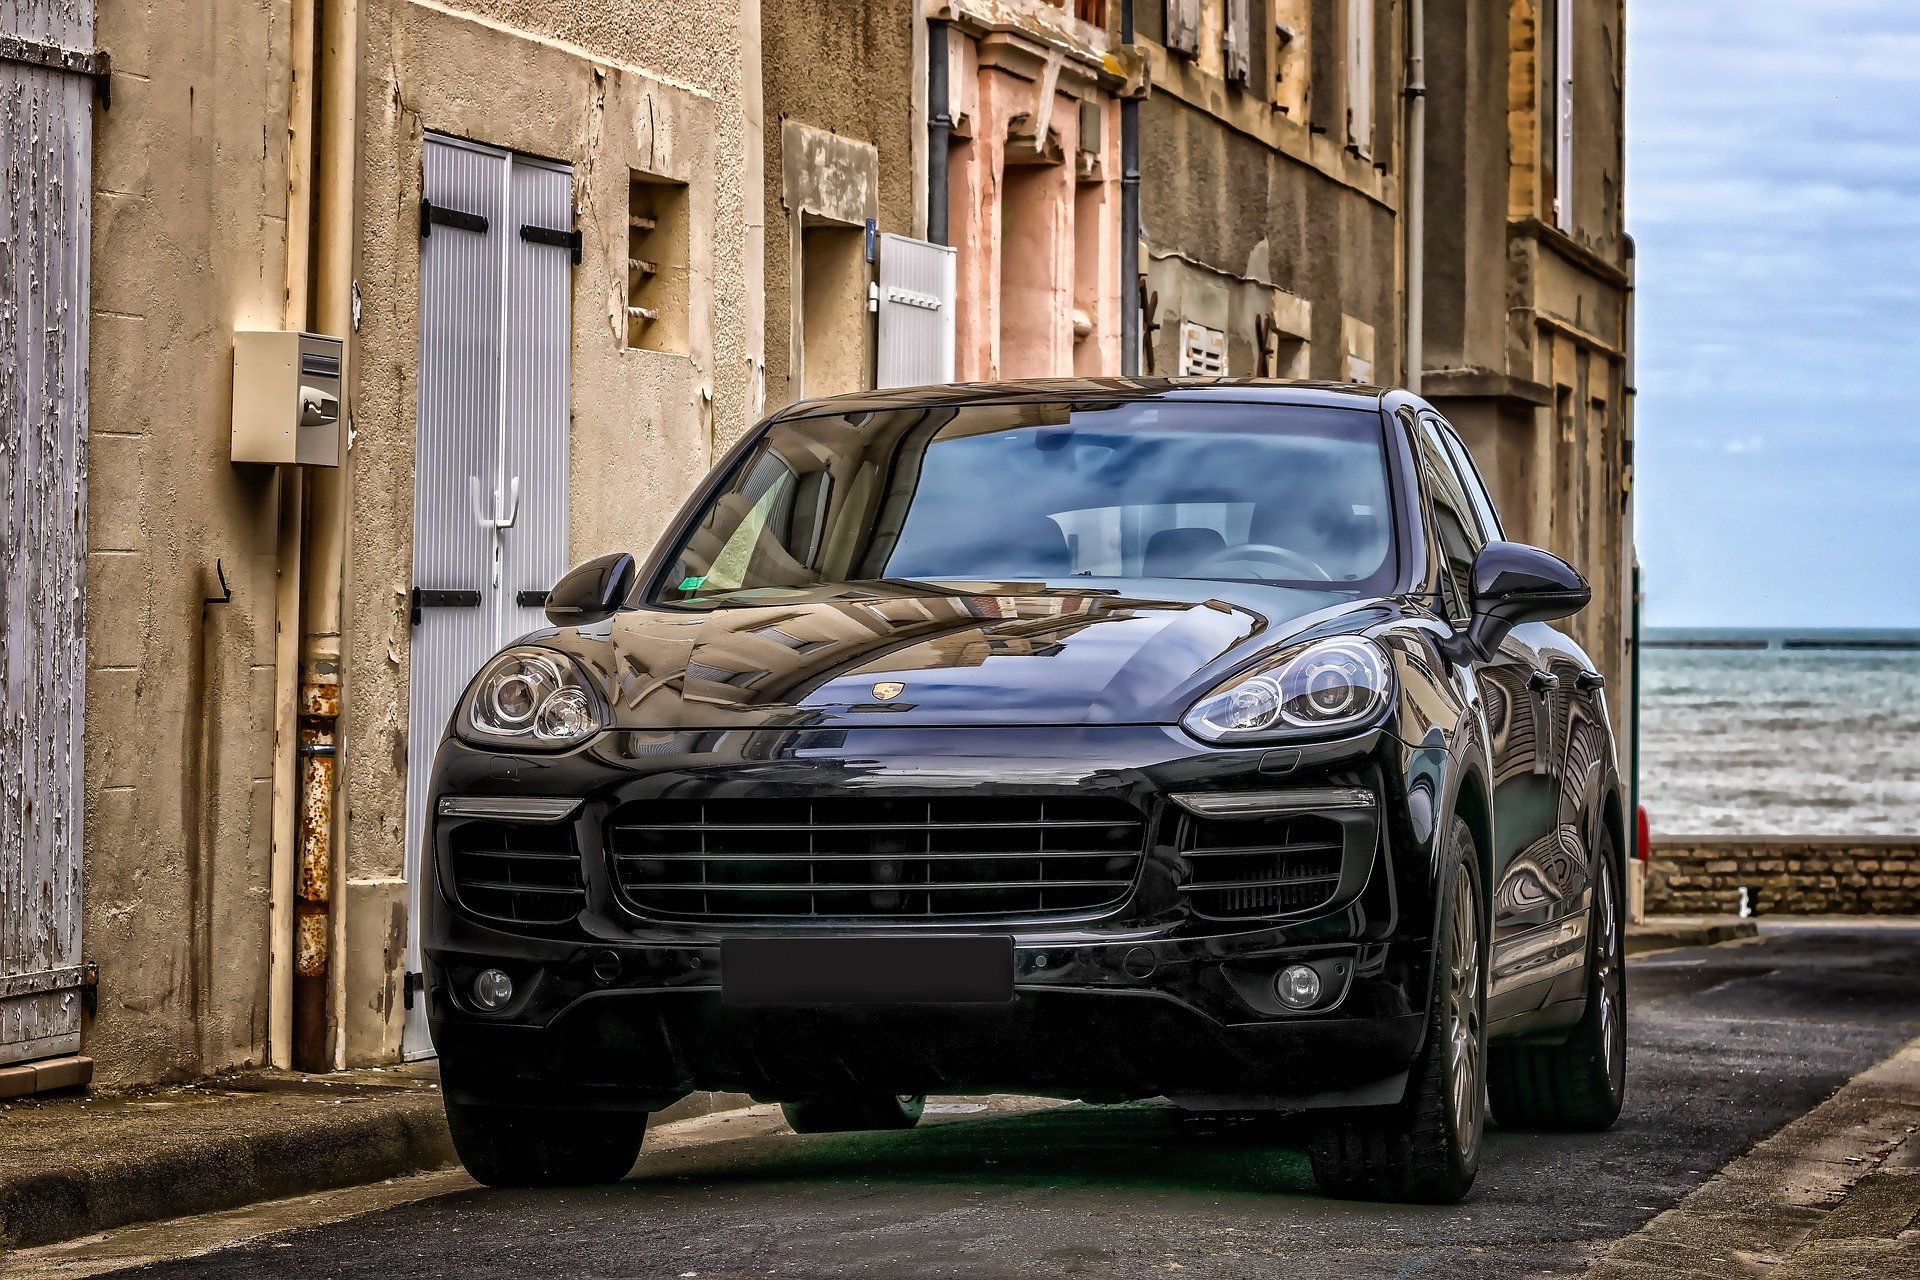 Porsche Cayenne vehicle | Source: Pixabay